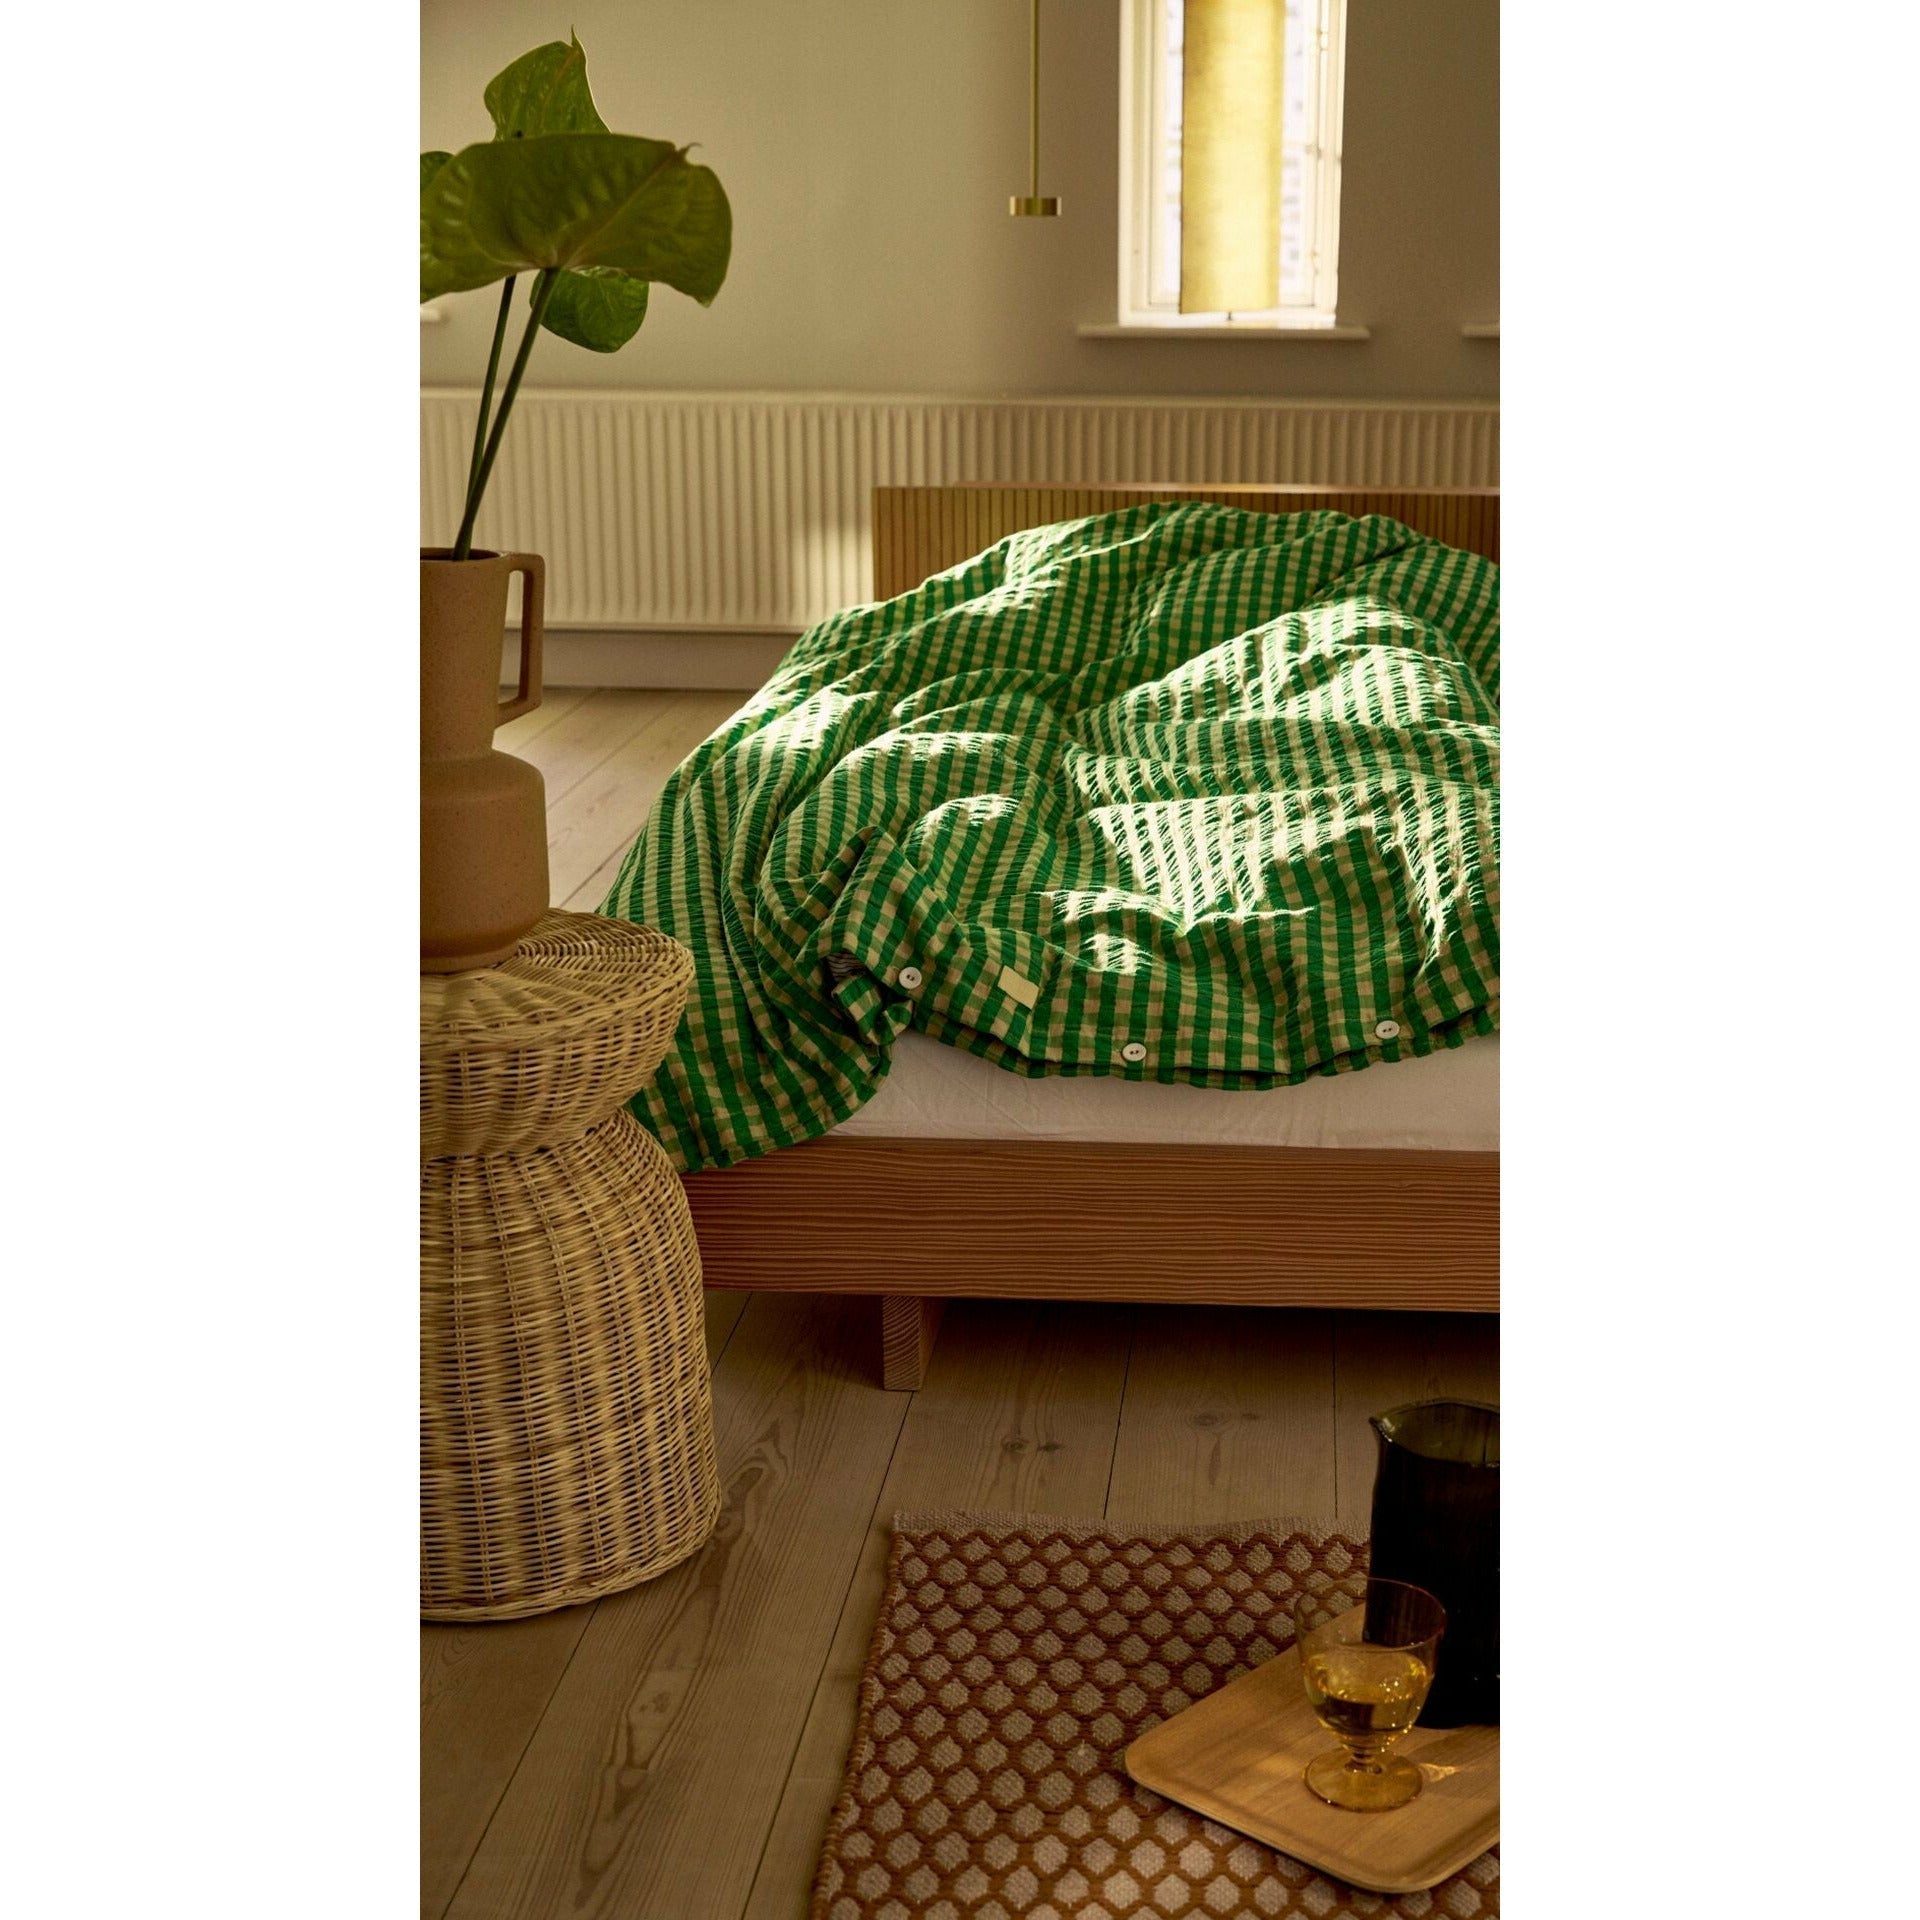 Juna Bræk & bølge lin lin 140x220 cm, vert / sable